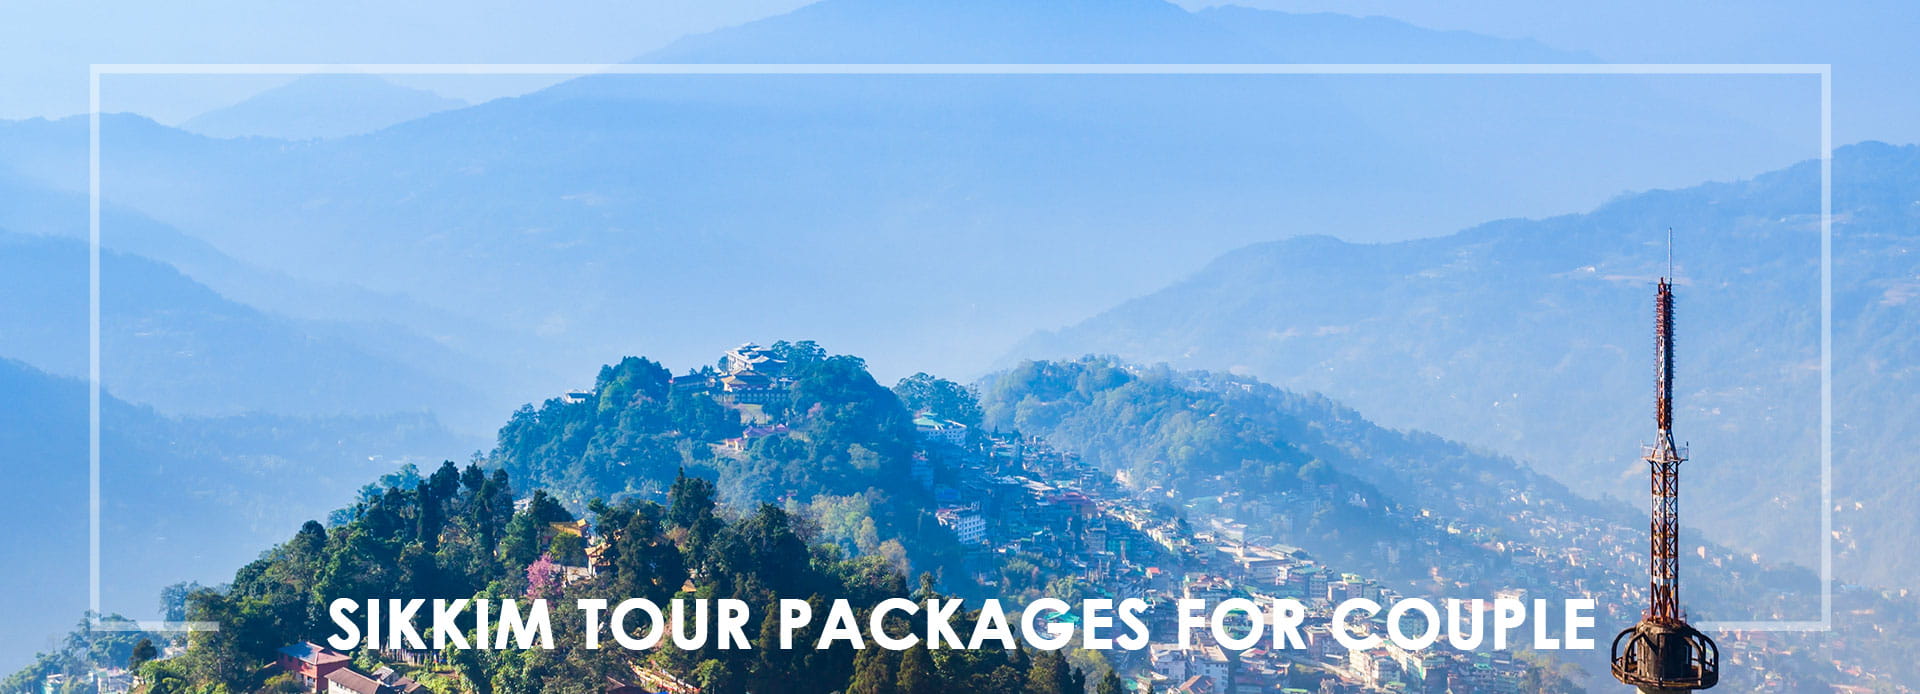  Sikkim Tour Packages For Couple - Dream Destination